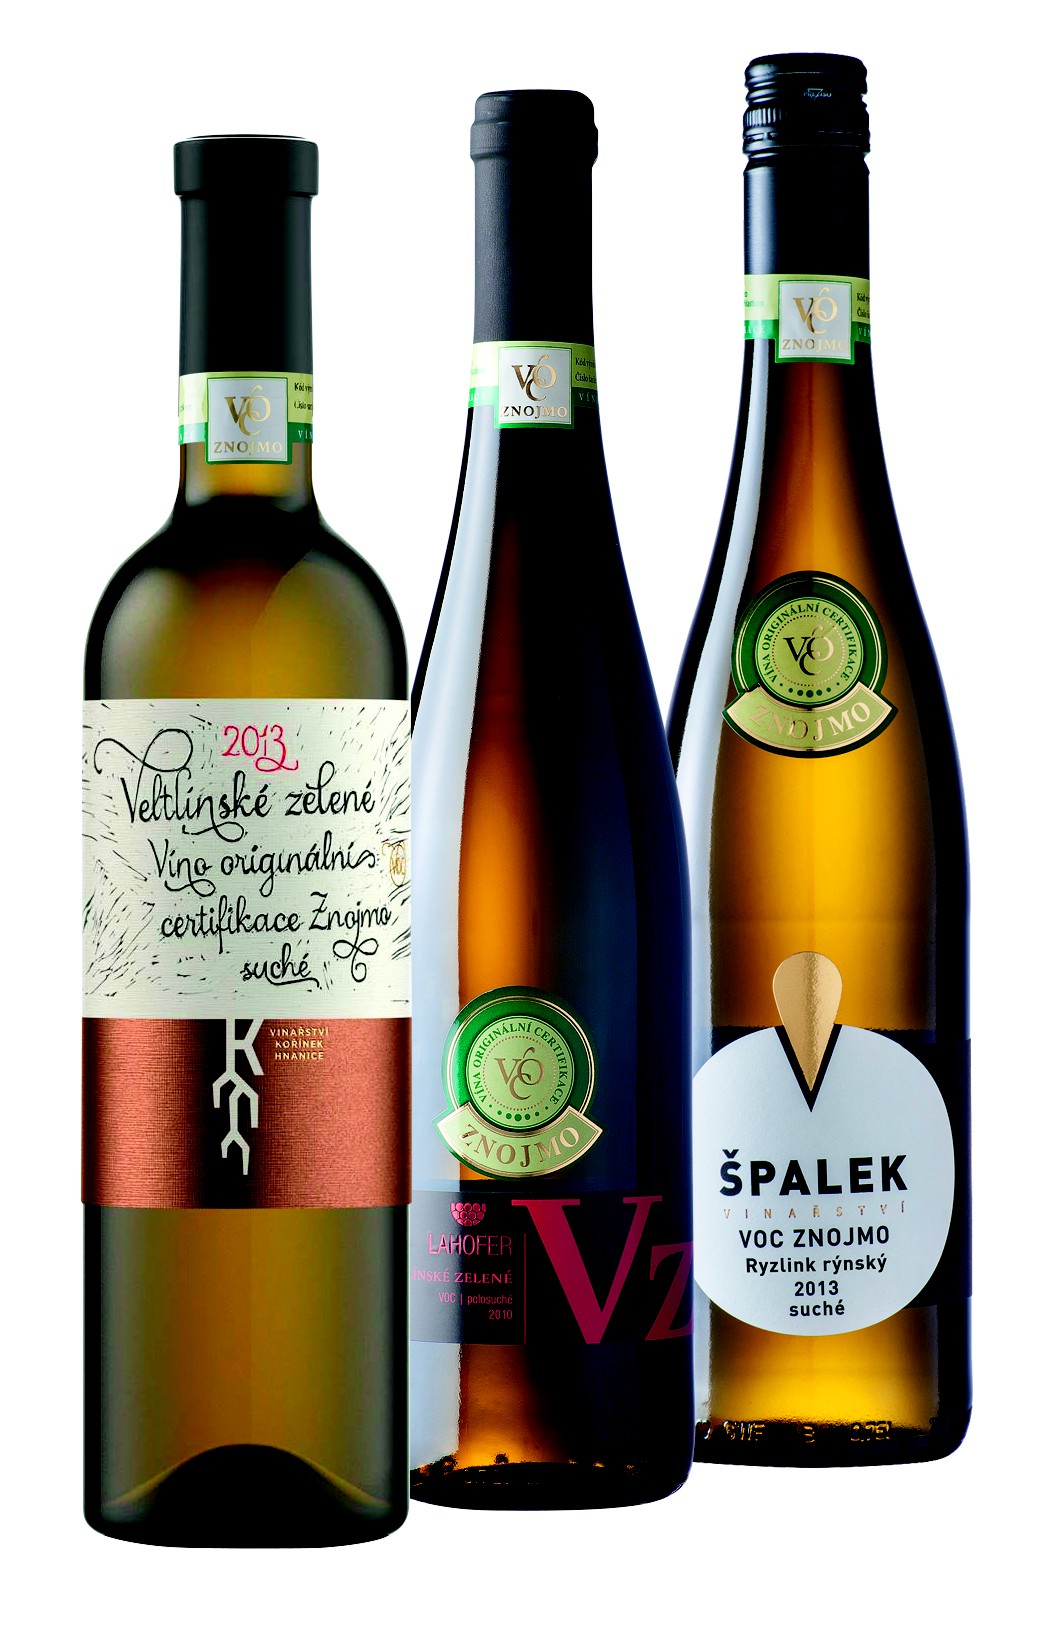 Aktualita: Hlasujte pro vinaře VOC Znojmo v soutěži Vinařství roku!